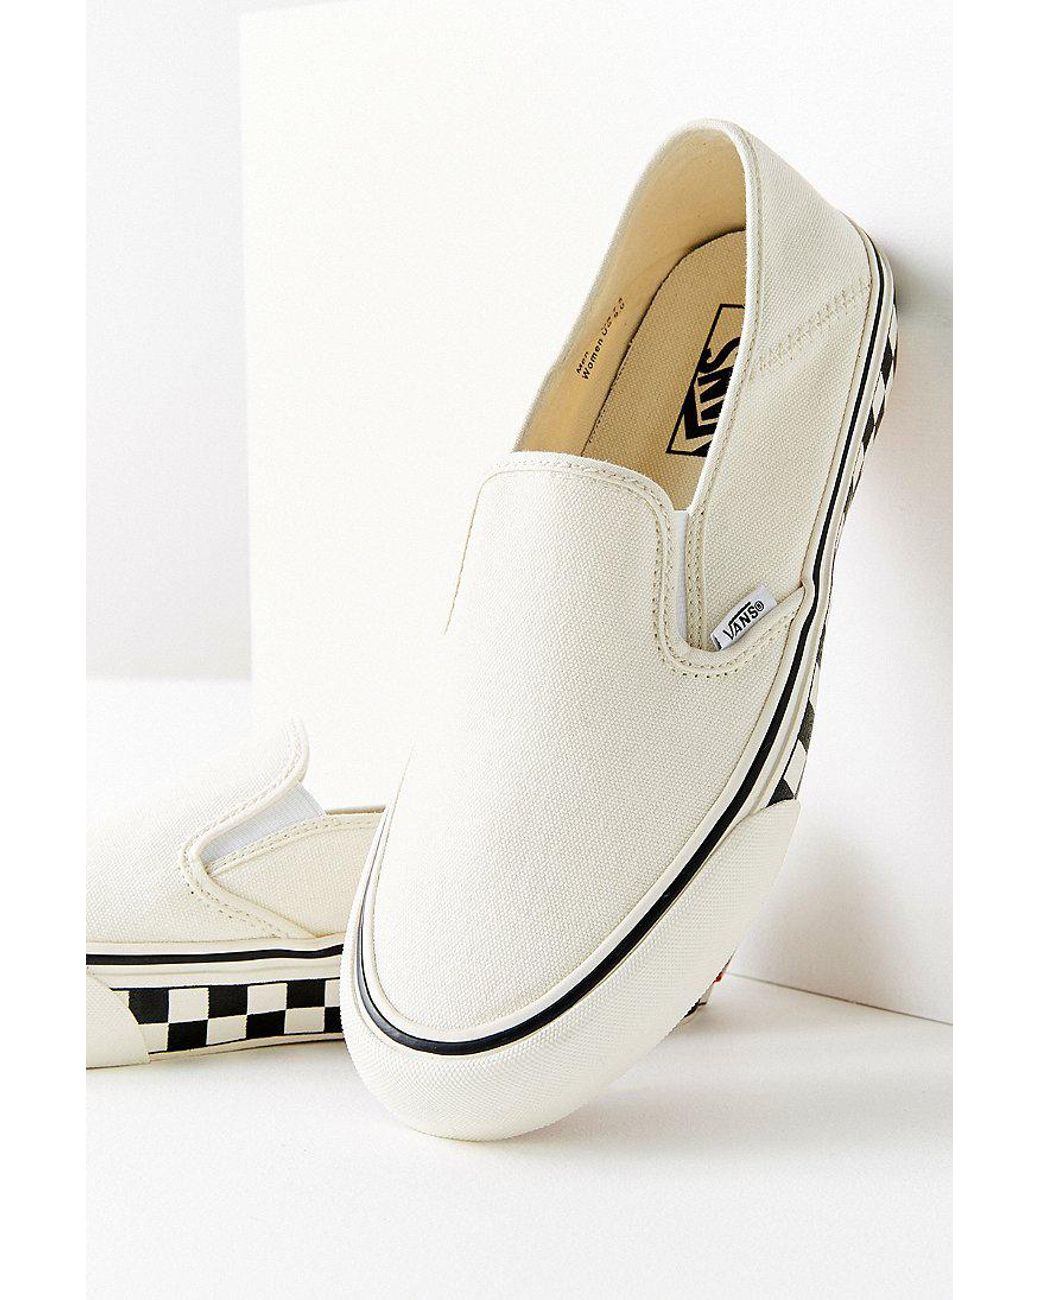 Vans Vans Slip-on Checkerboard Sidewall White Sneaker | Lyst